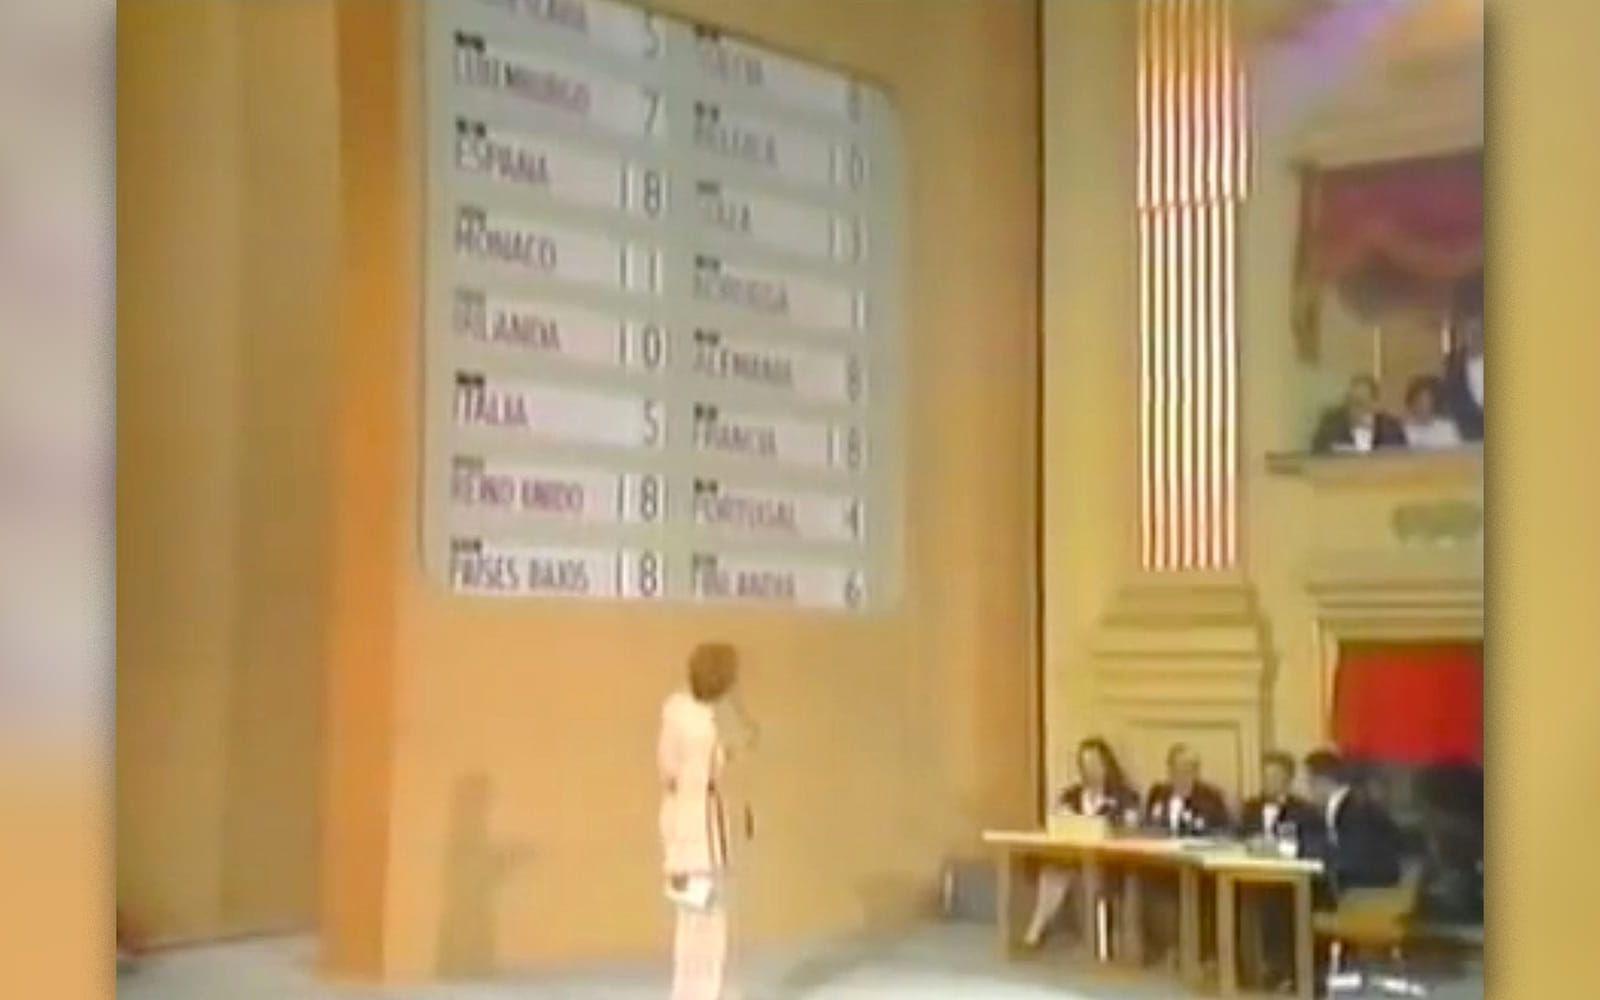 <strong>Bojkott efter fyra segrare.</strong> Vinnarna av Eurovision 1969 var hela fyra stycken. På den tiden fanns inga regler vad som skulle hända om flera länder landade på samma poäng. Därför utsågs både Frankrike, Nederländerna, Storbritannien och Spanien segern. Alla fyra bidrag fick spelas upp igen och svenska medier stormade. Sverige bojkottade därför ESC året efter. Numera finns inte risken för att länder ska kunna dela på vinsten. Hamnar två länder på samma poäng räknas antalet 12-poängare länderna fått. Är det lika även där räknar man antalet 10-poängare osv. tills en segrare korats.